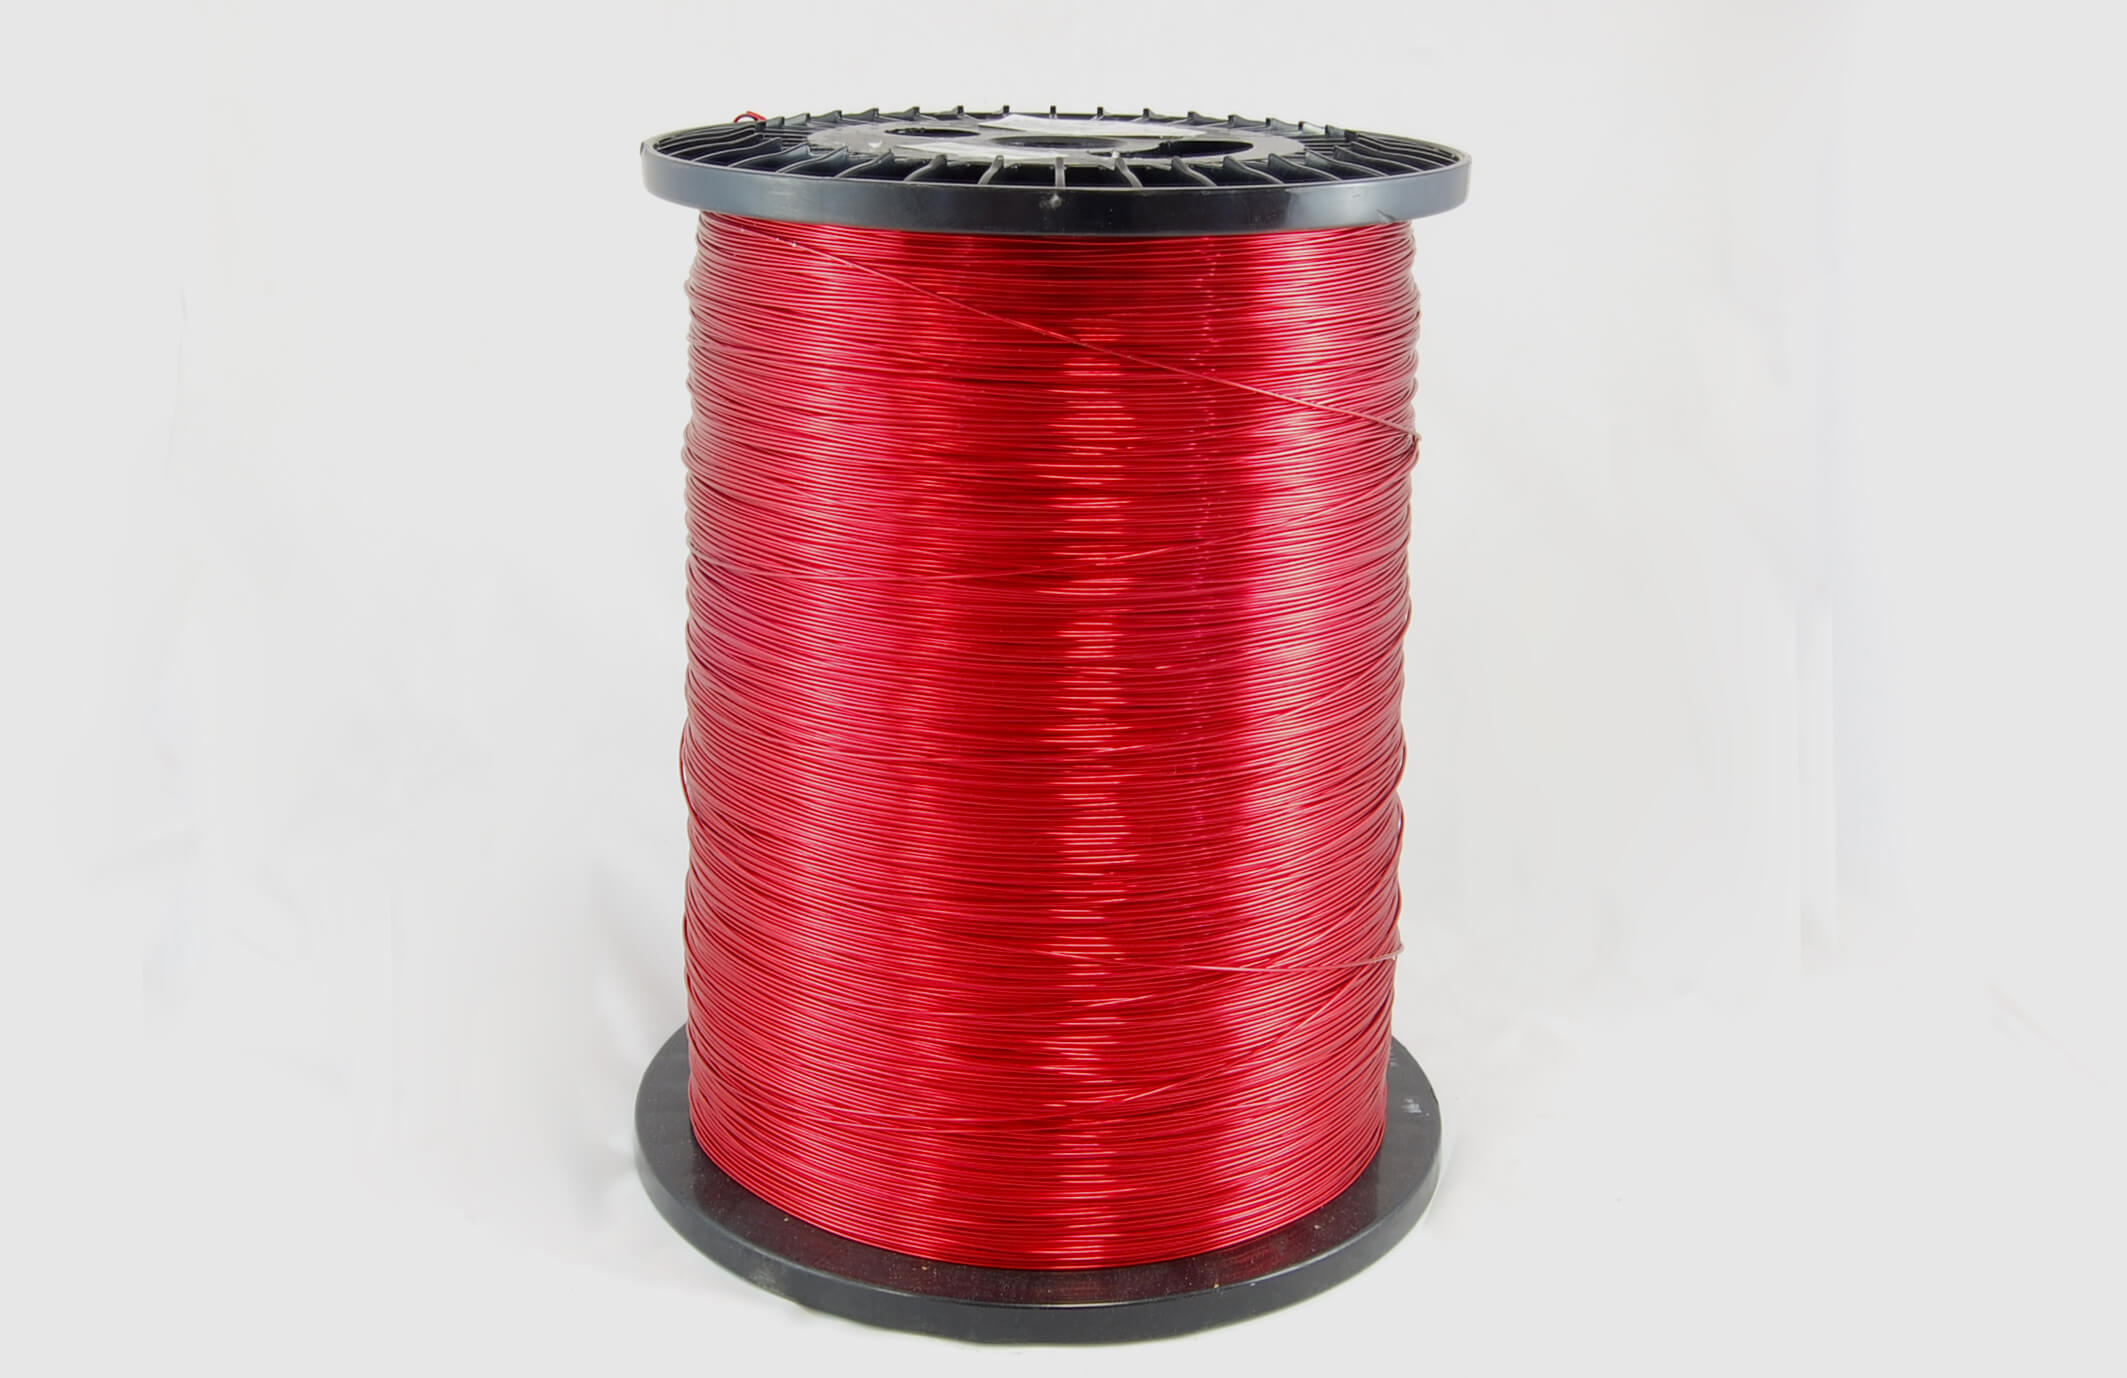 #21 Single Nysol  Round SNSR MW 80 Copper Magnet Wire 155°C, red, 85 LB box (average wght.)